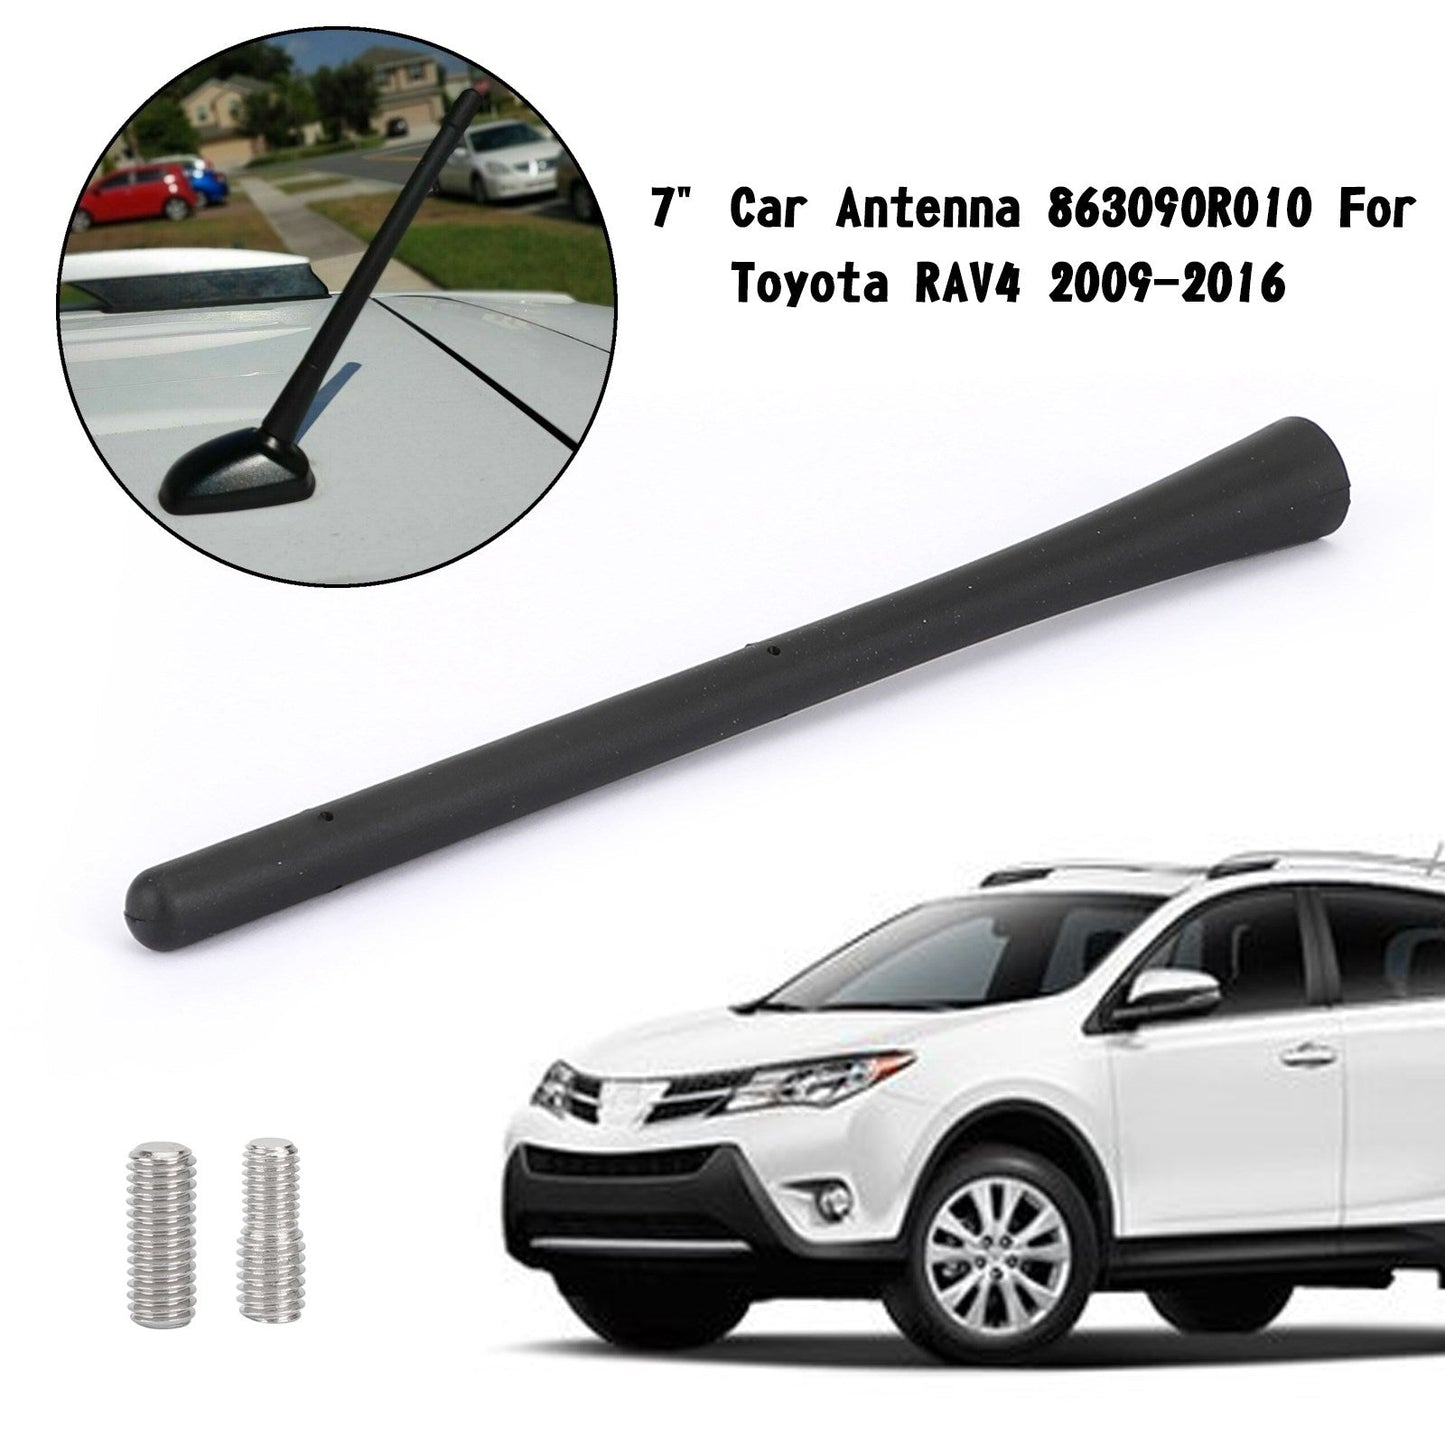 7" Car Antenna 863090R010 For Toyota RAV4 2009-2016